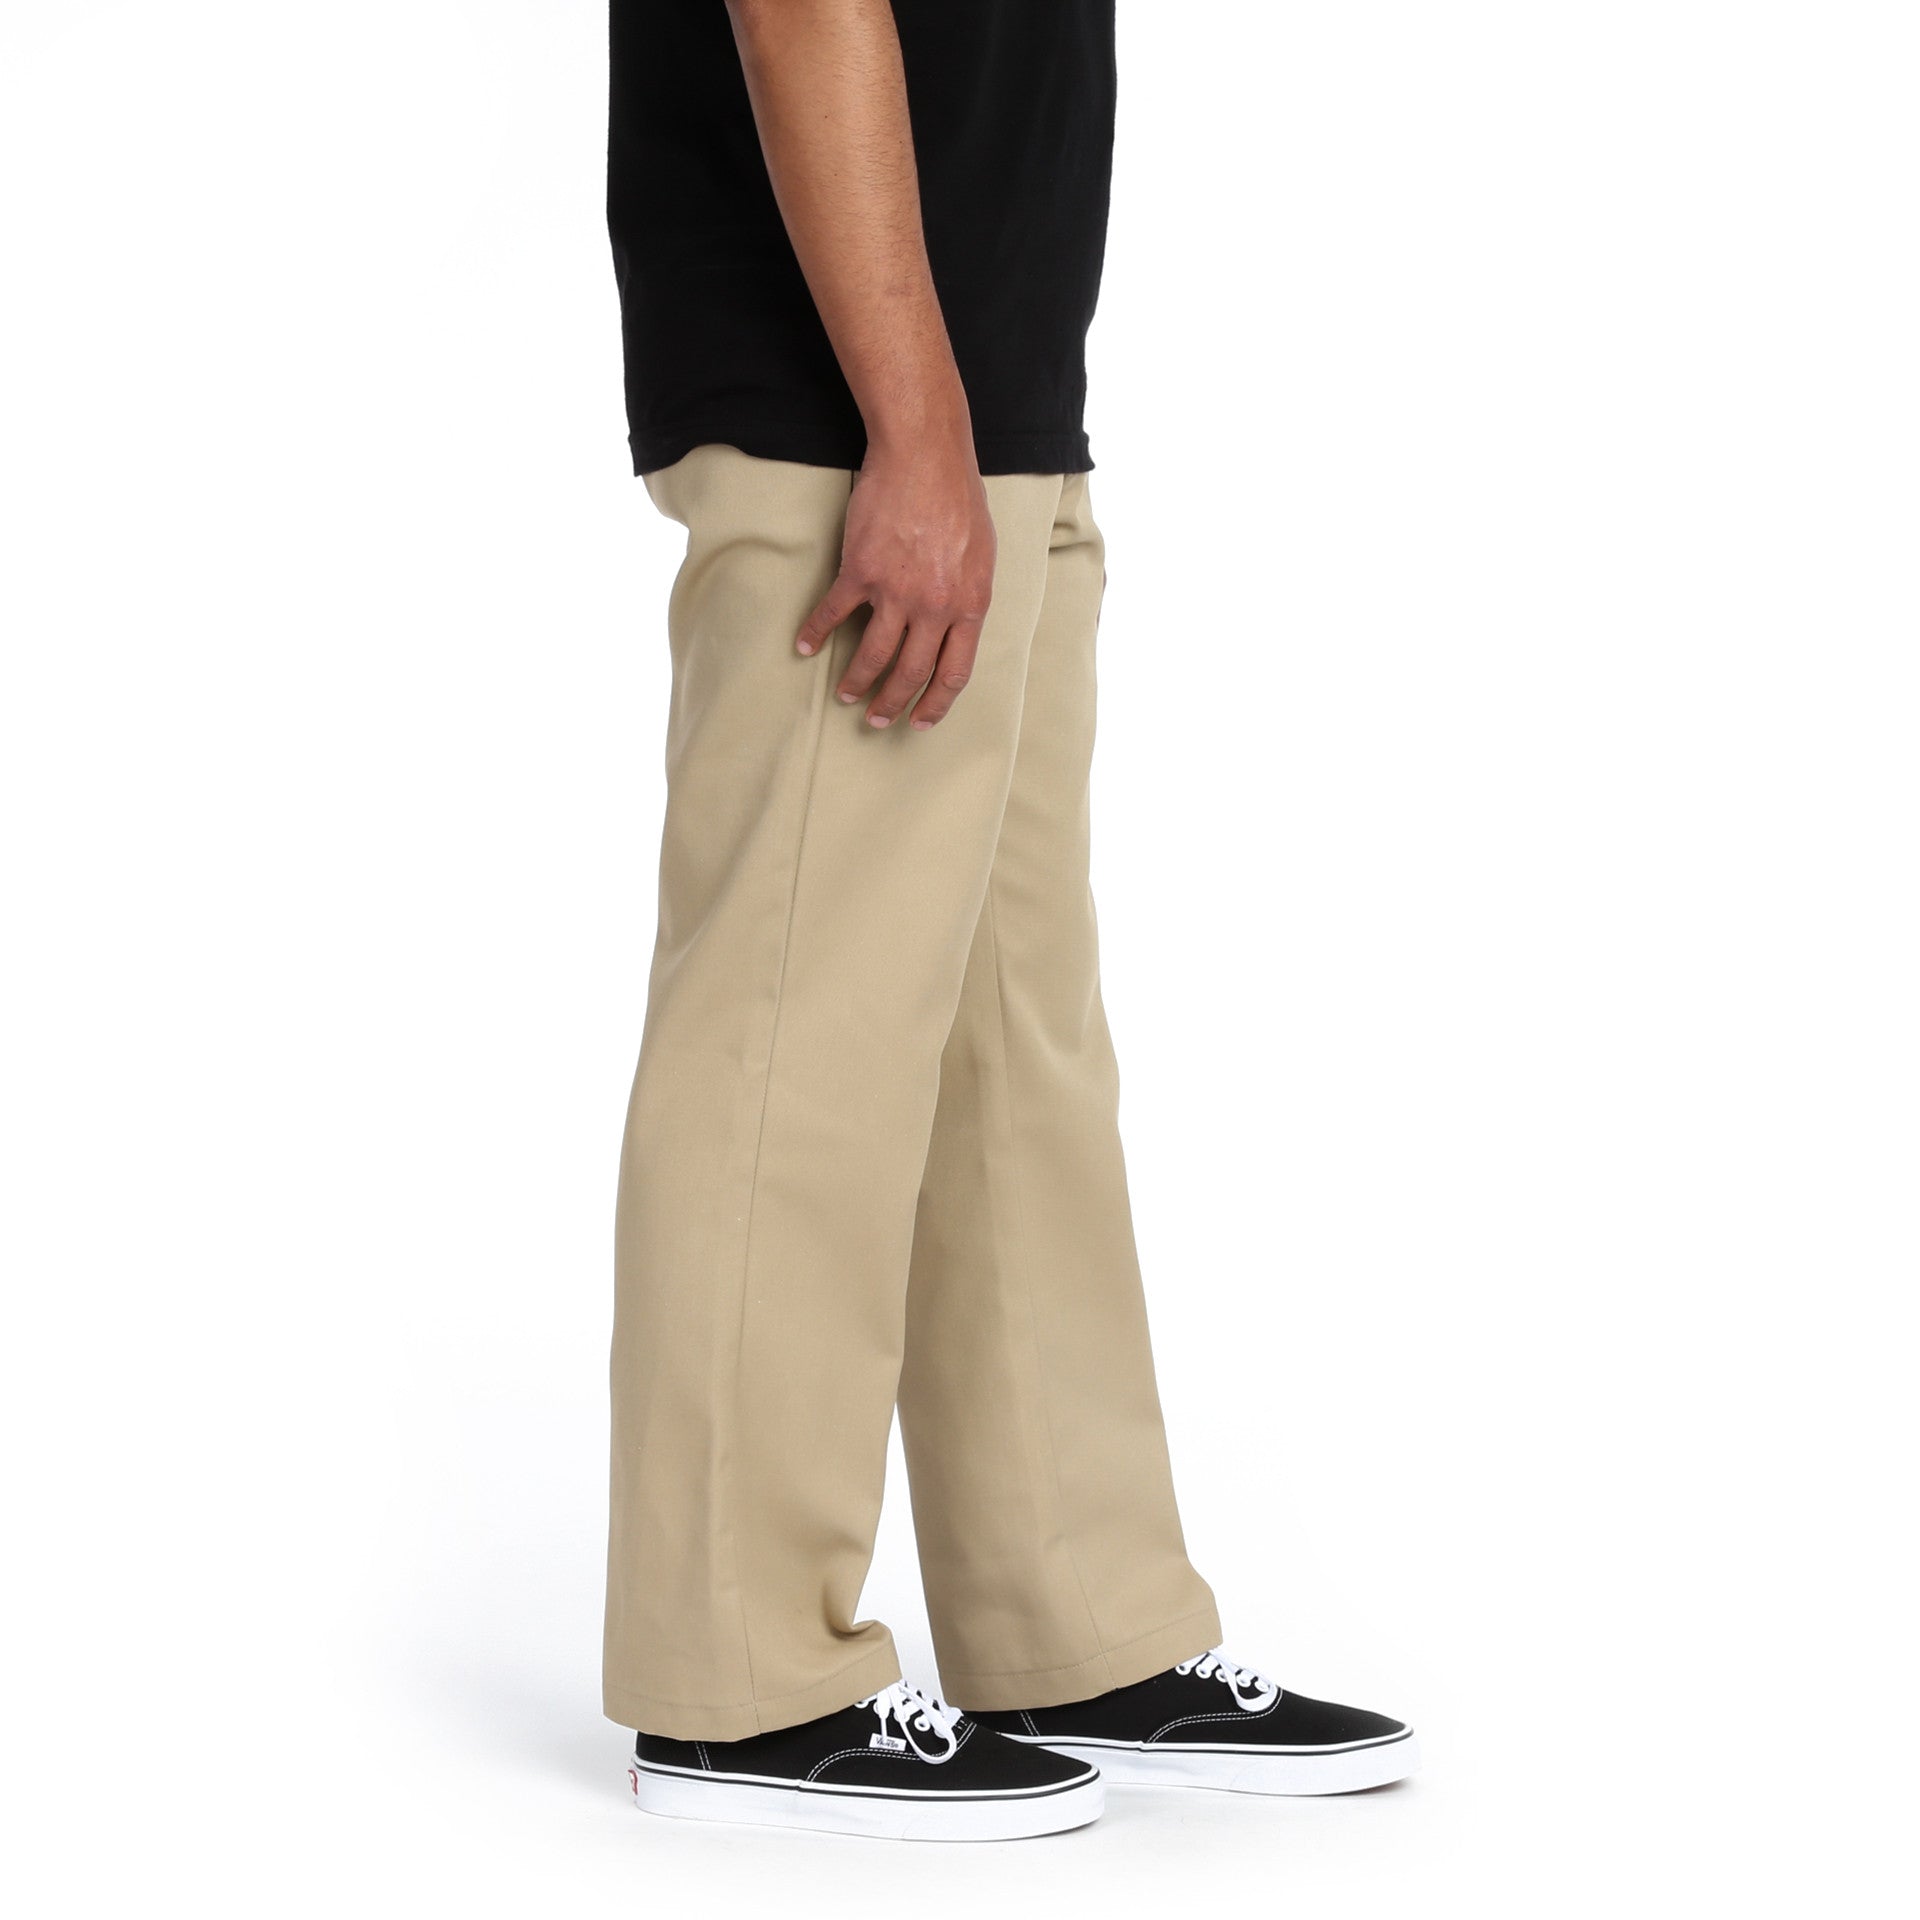 Dickies 874 work pants in khaki straight fit